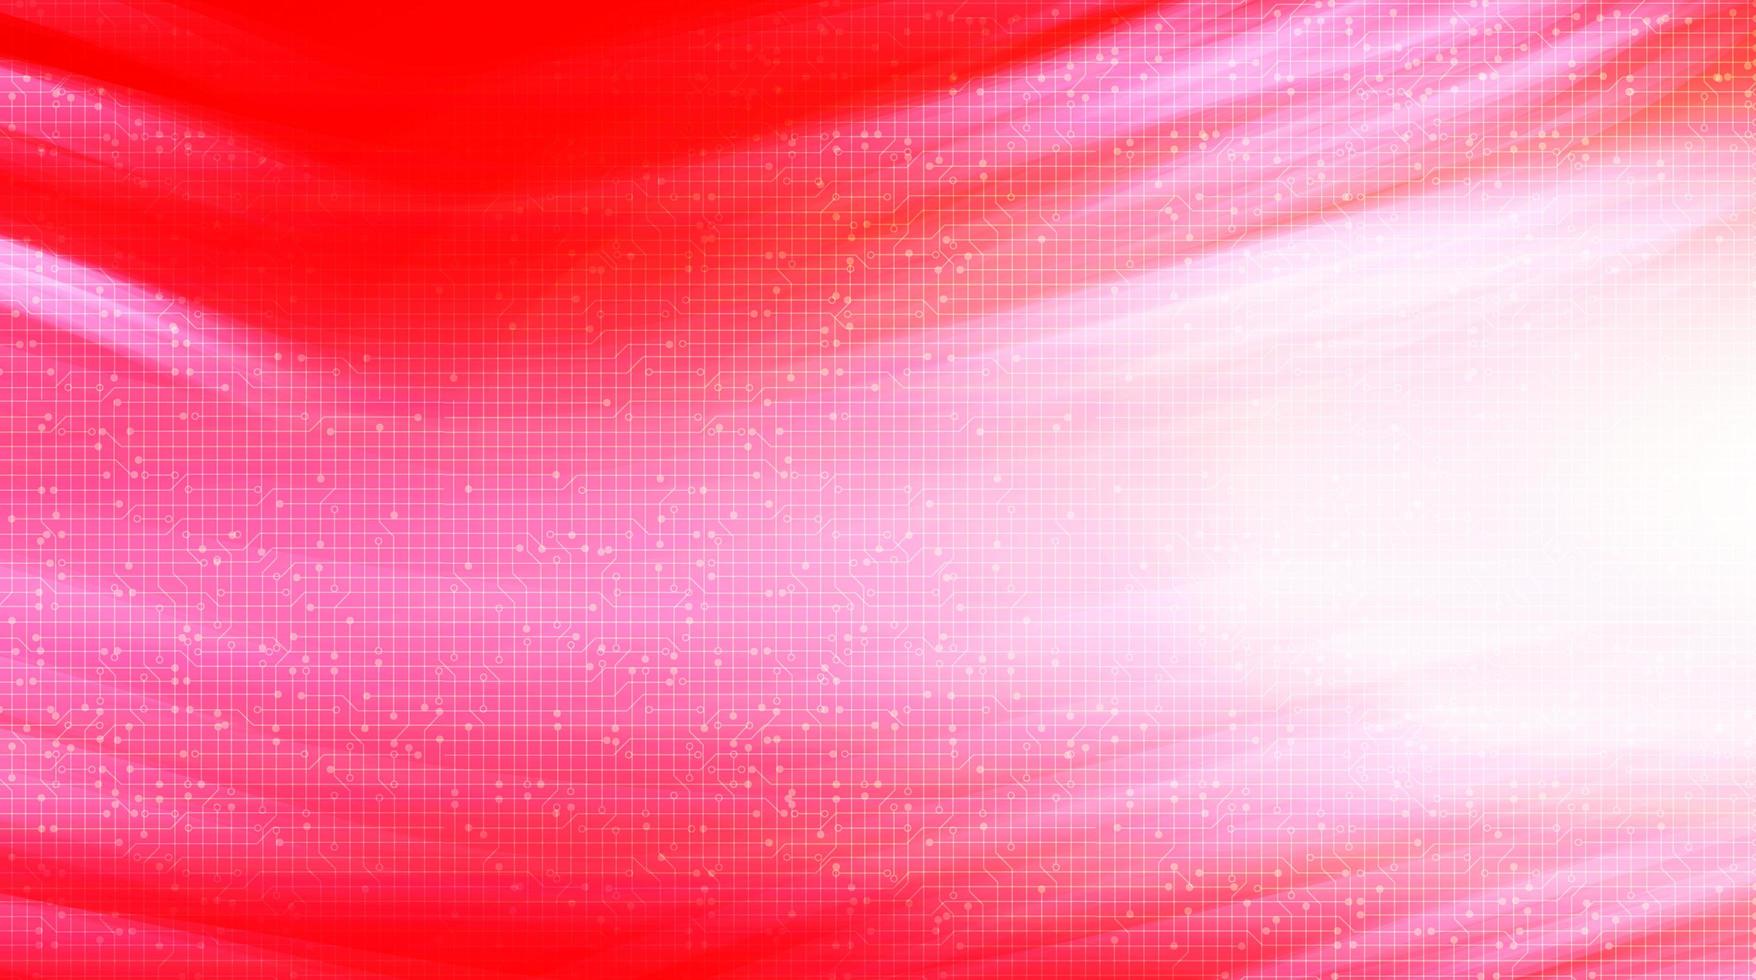 röd digital hastighet på teknikmikrochipbakgrund vektor